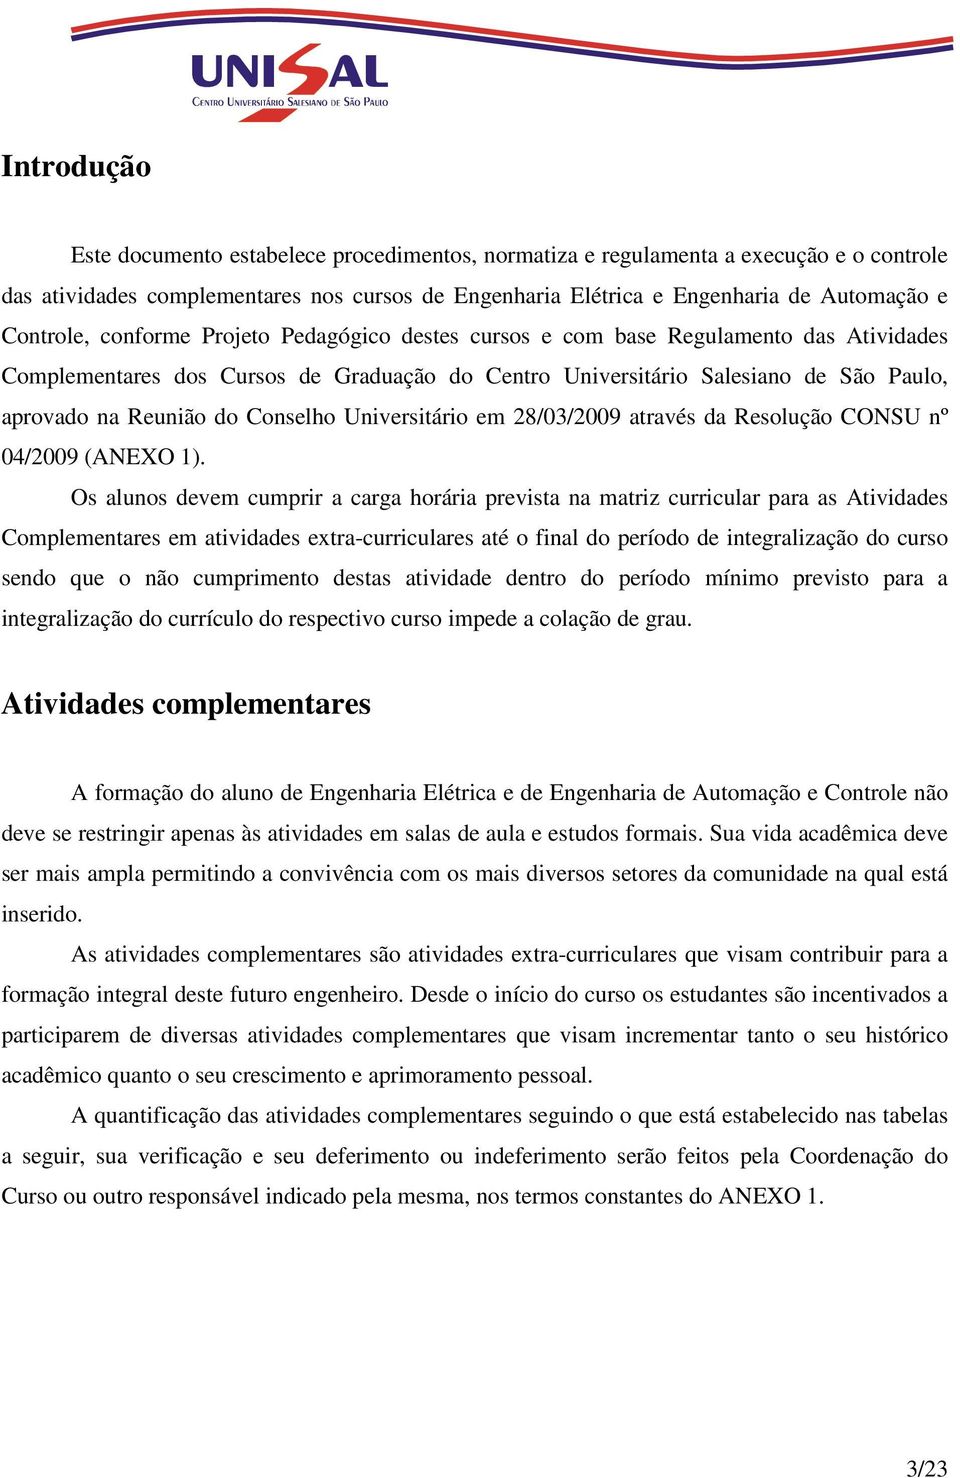 Conselho Universitário em 28/03/2009 através da Resolução CONSU nº 04/2009 (ANEXO 1).